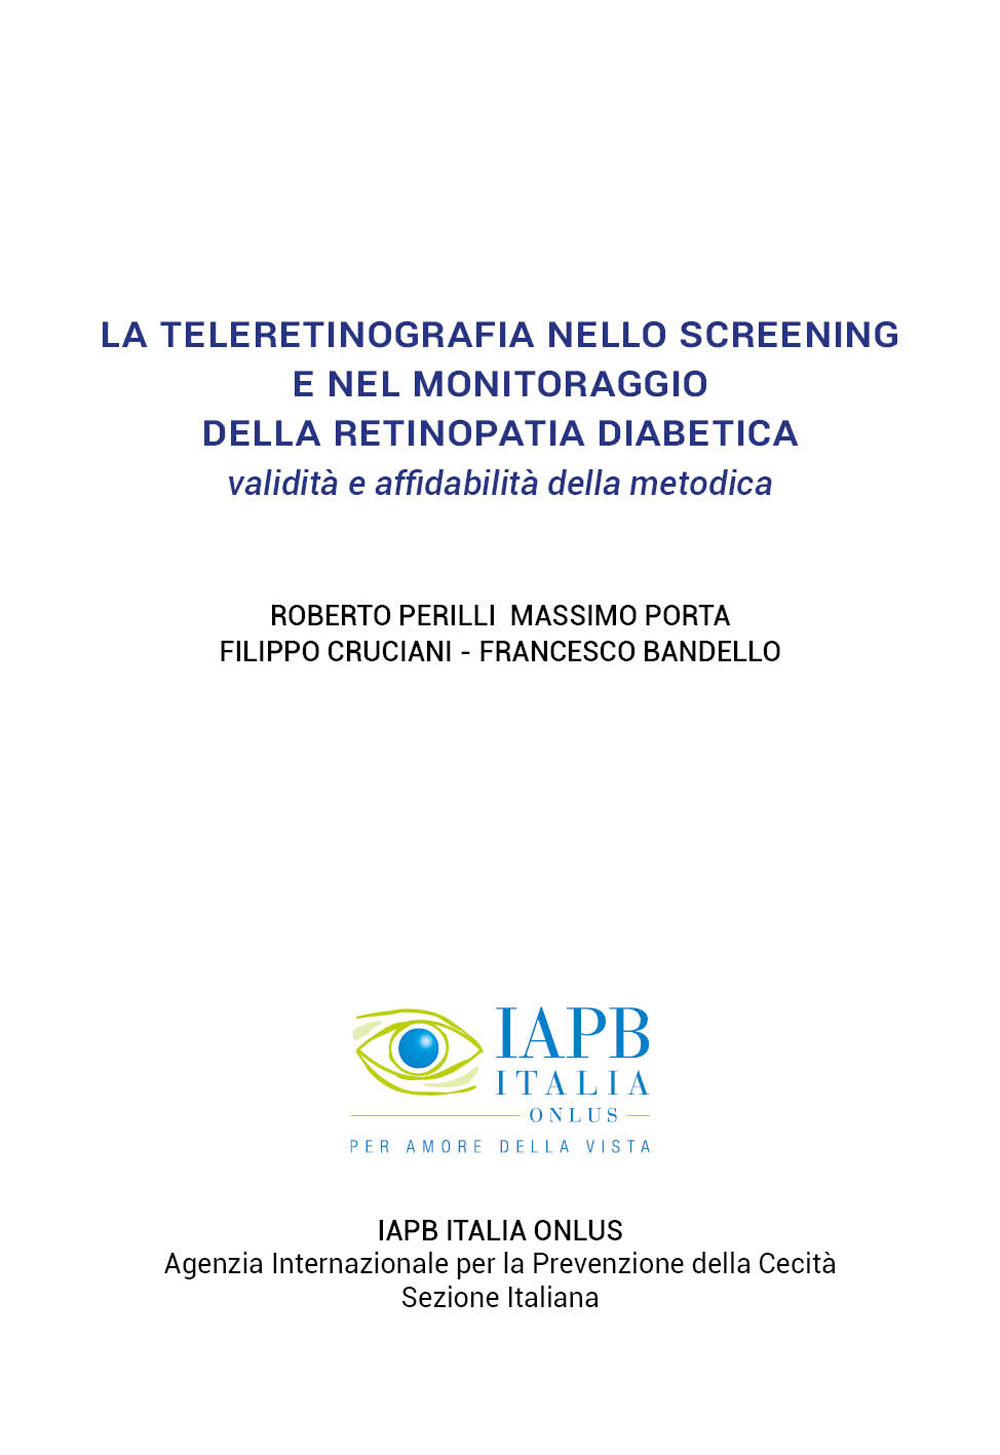 La teleretinografia nello screening e nel monitoraggio della retinopatia diabetica. Validità e affidabilità della metodica